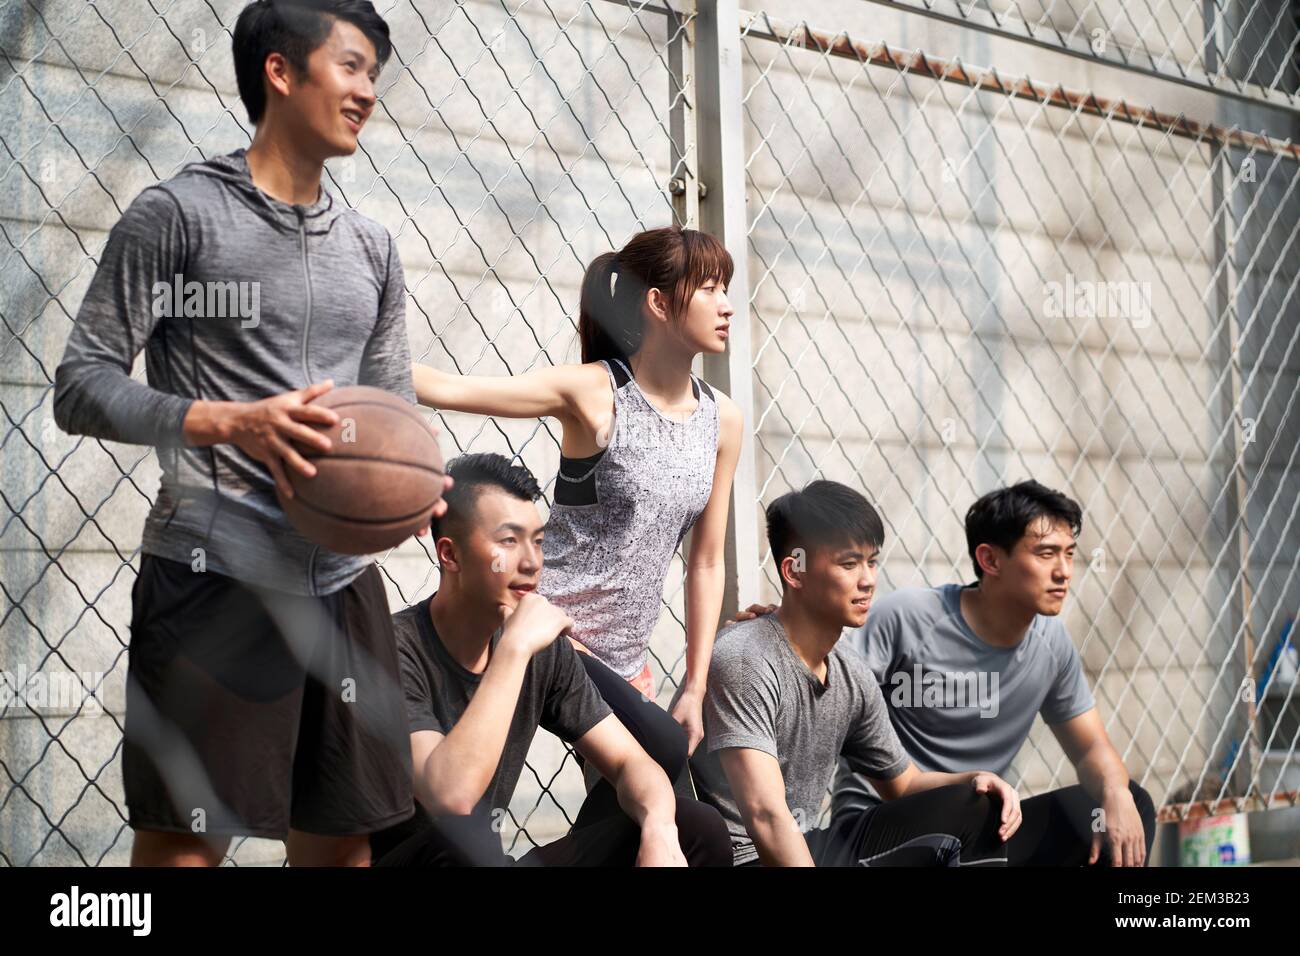 groupe de cinq jeunes adultes asiatiques, hommes et femmes, se reposant sur un terrain de basket-ball extérieur Banque D'Images